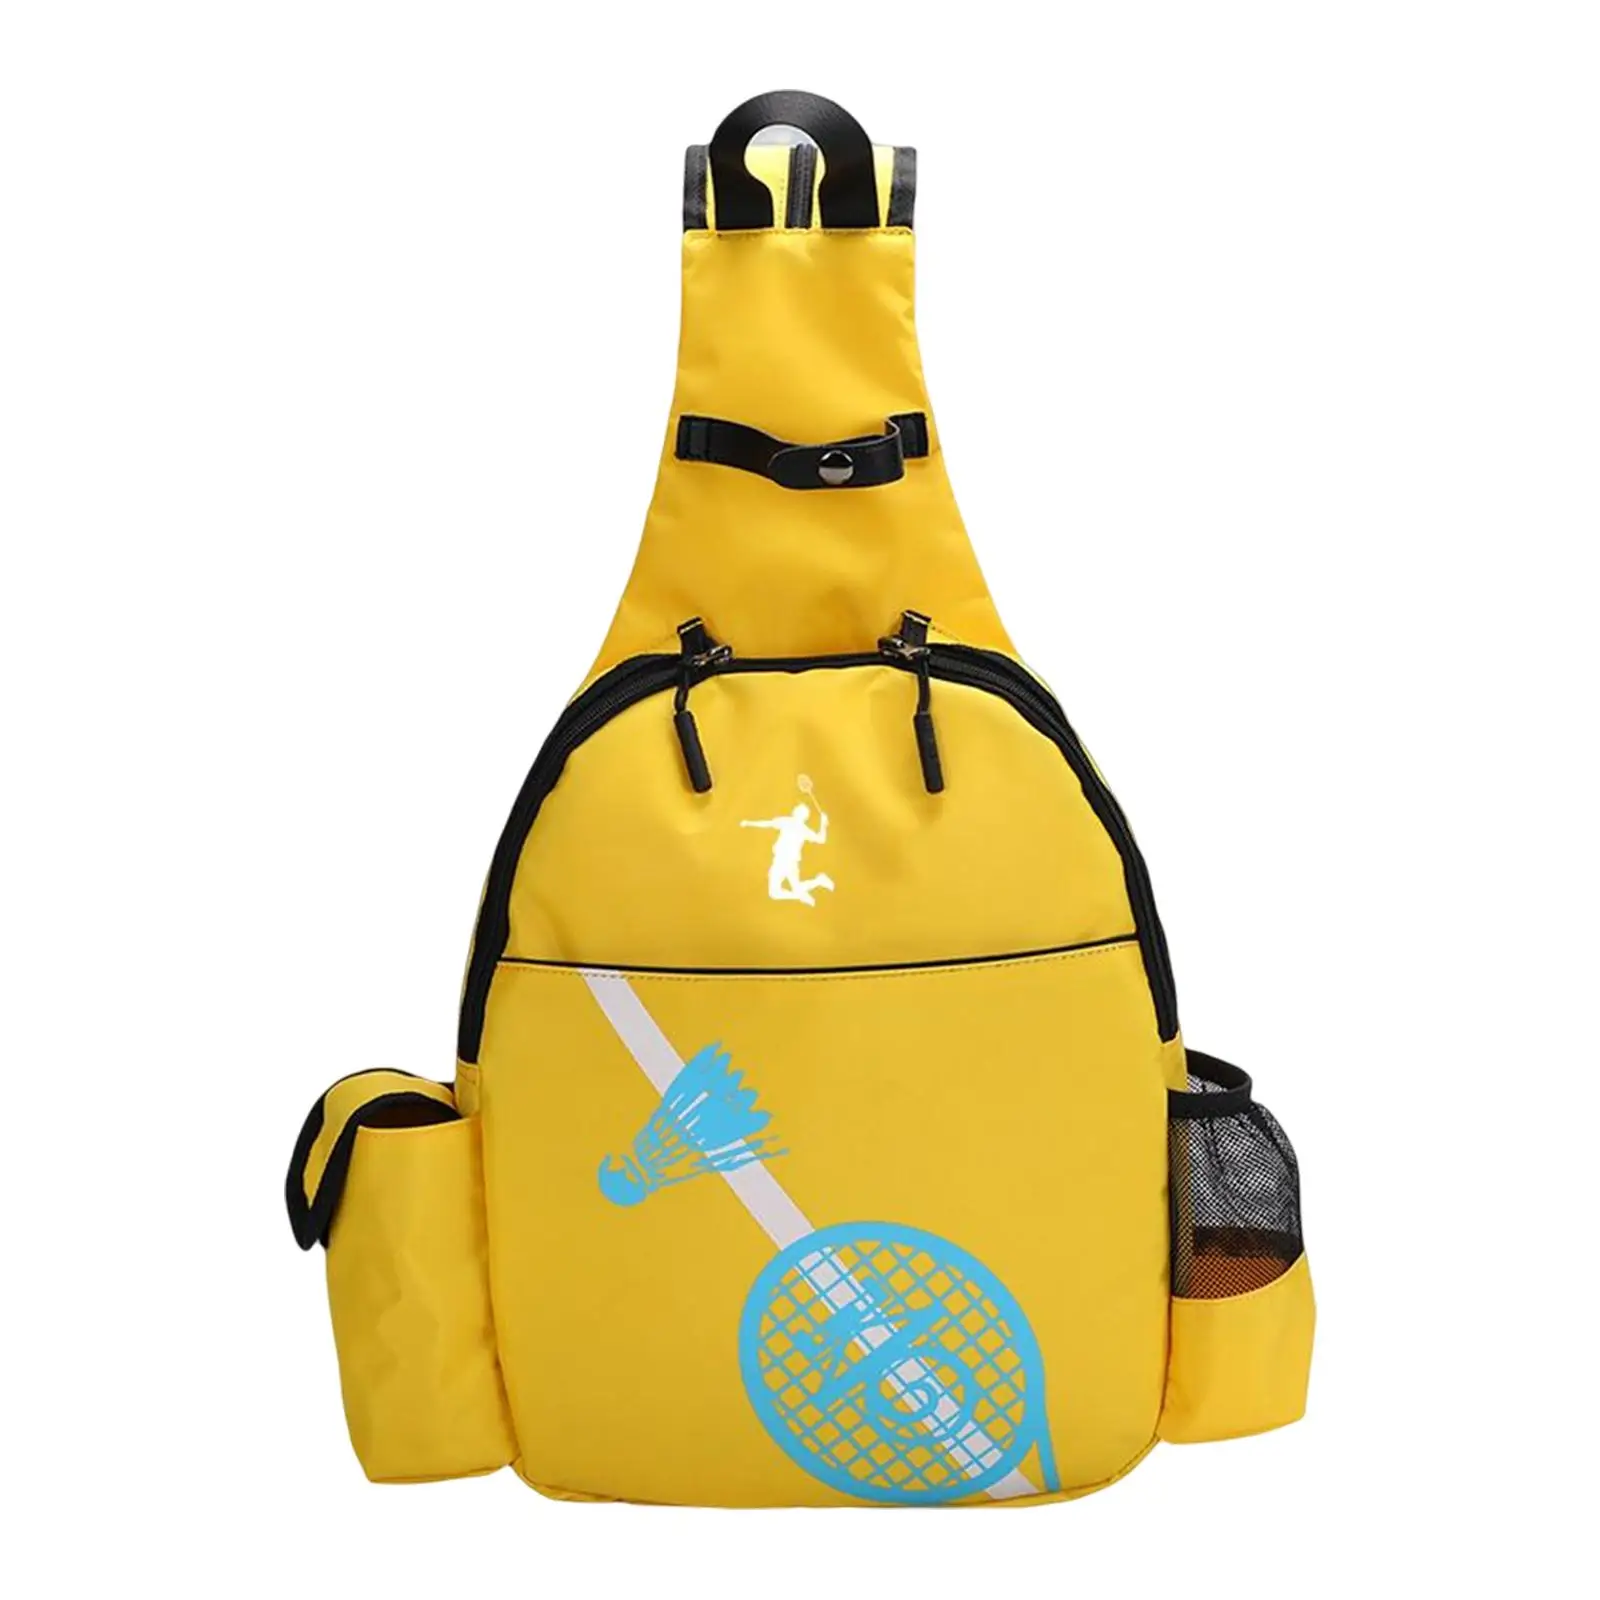 Professional Tennis Racquet Bag Lightweight for Outdoors Beginner Players